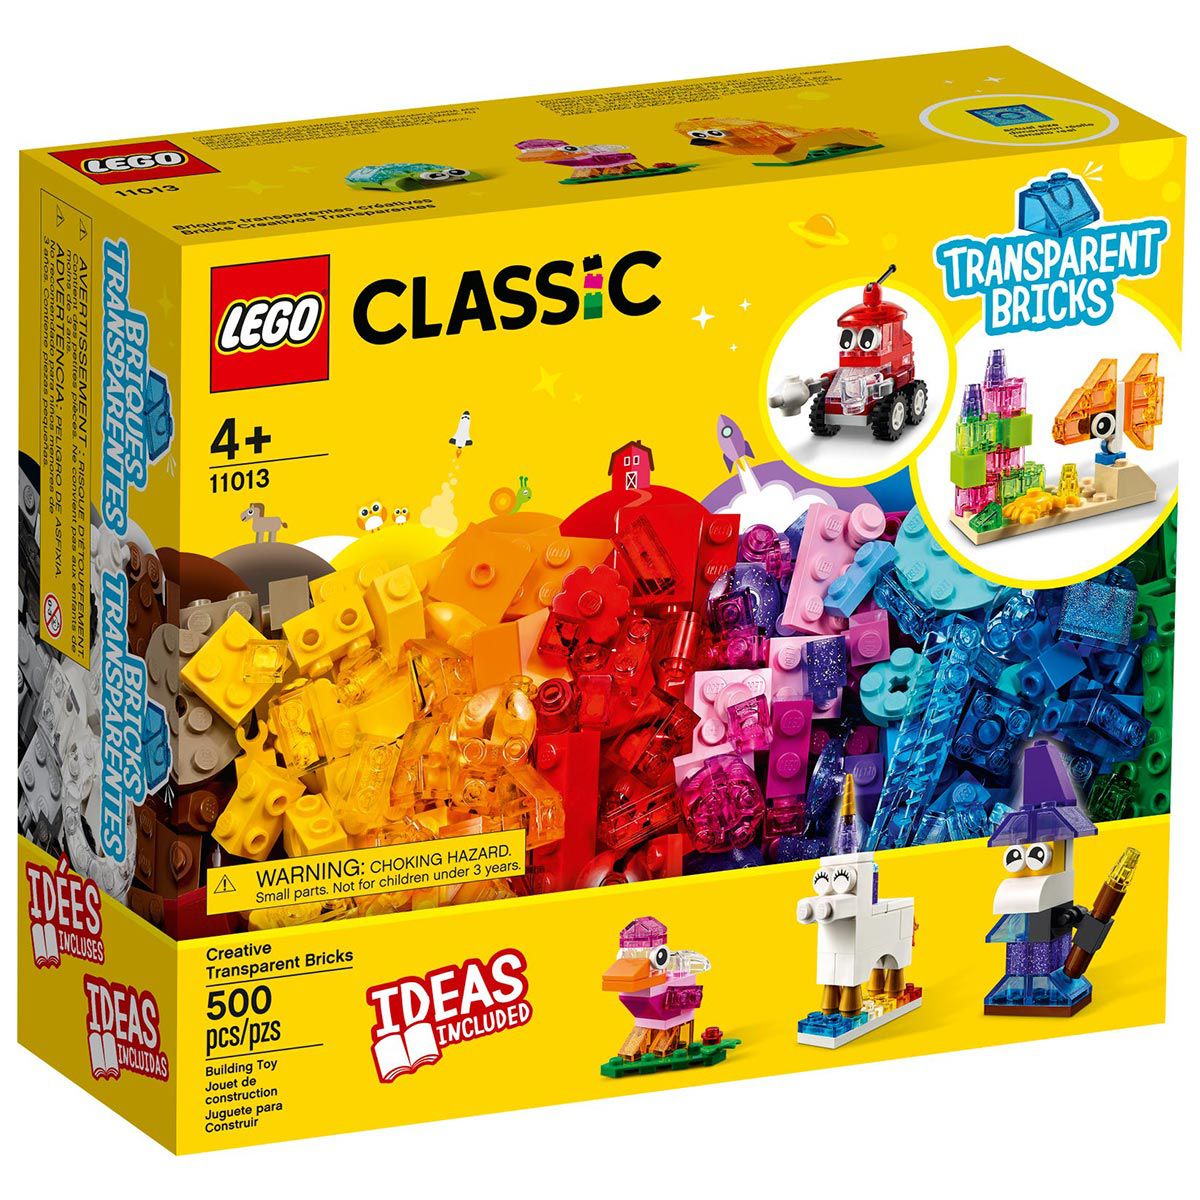 Castelo de Montar – Peças Compatíveis com Lego Colorido, para Crianças –  Descrição Magazine